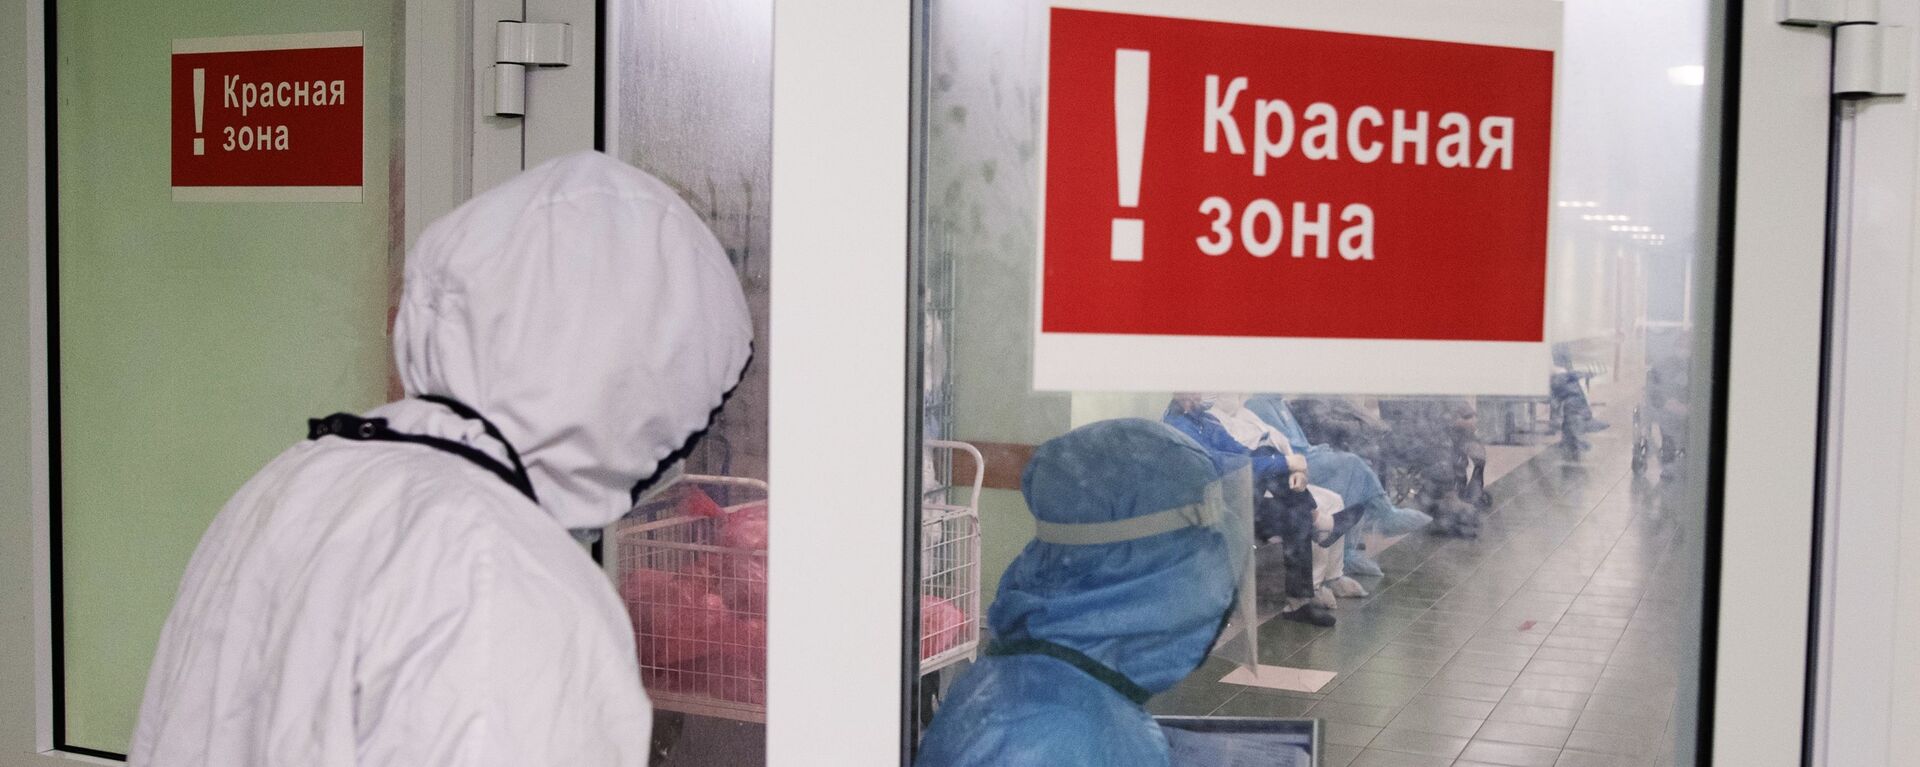 Медицинские сотрудники входят в красную зону городской клинической больницы - Sputnik Беларусь, 1920, 29.03.2021